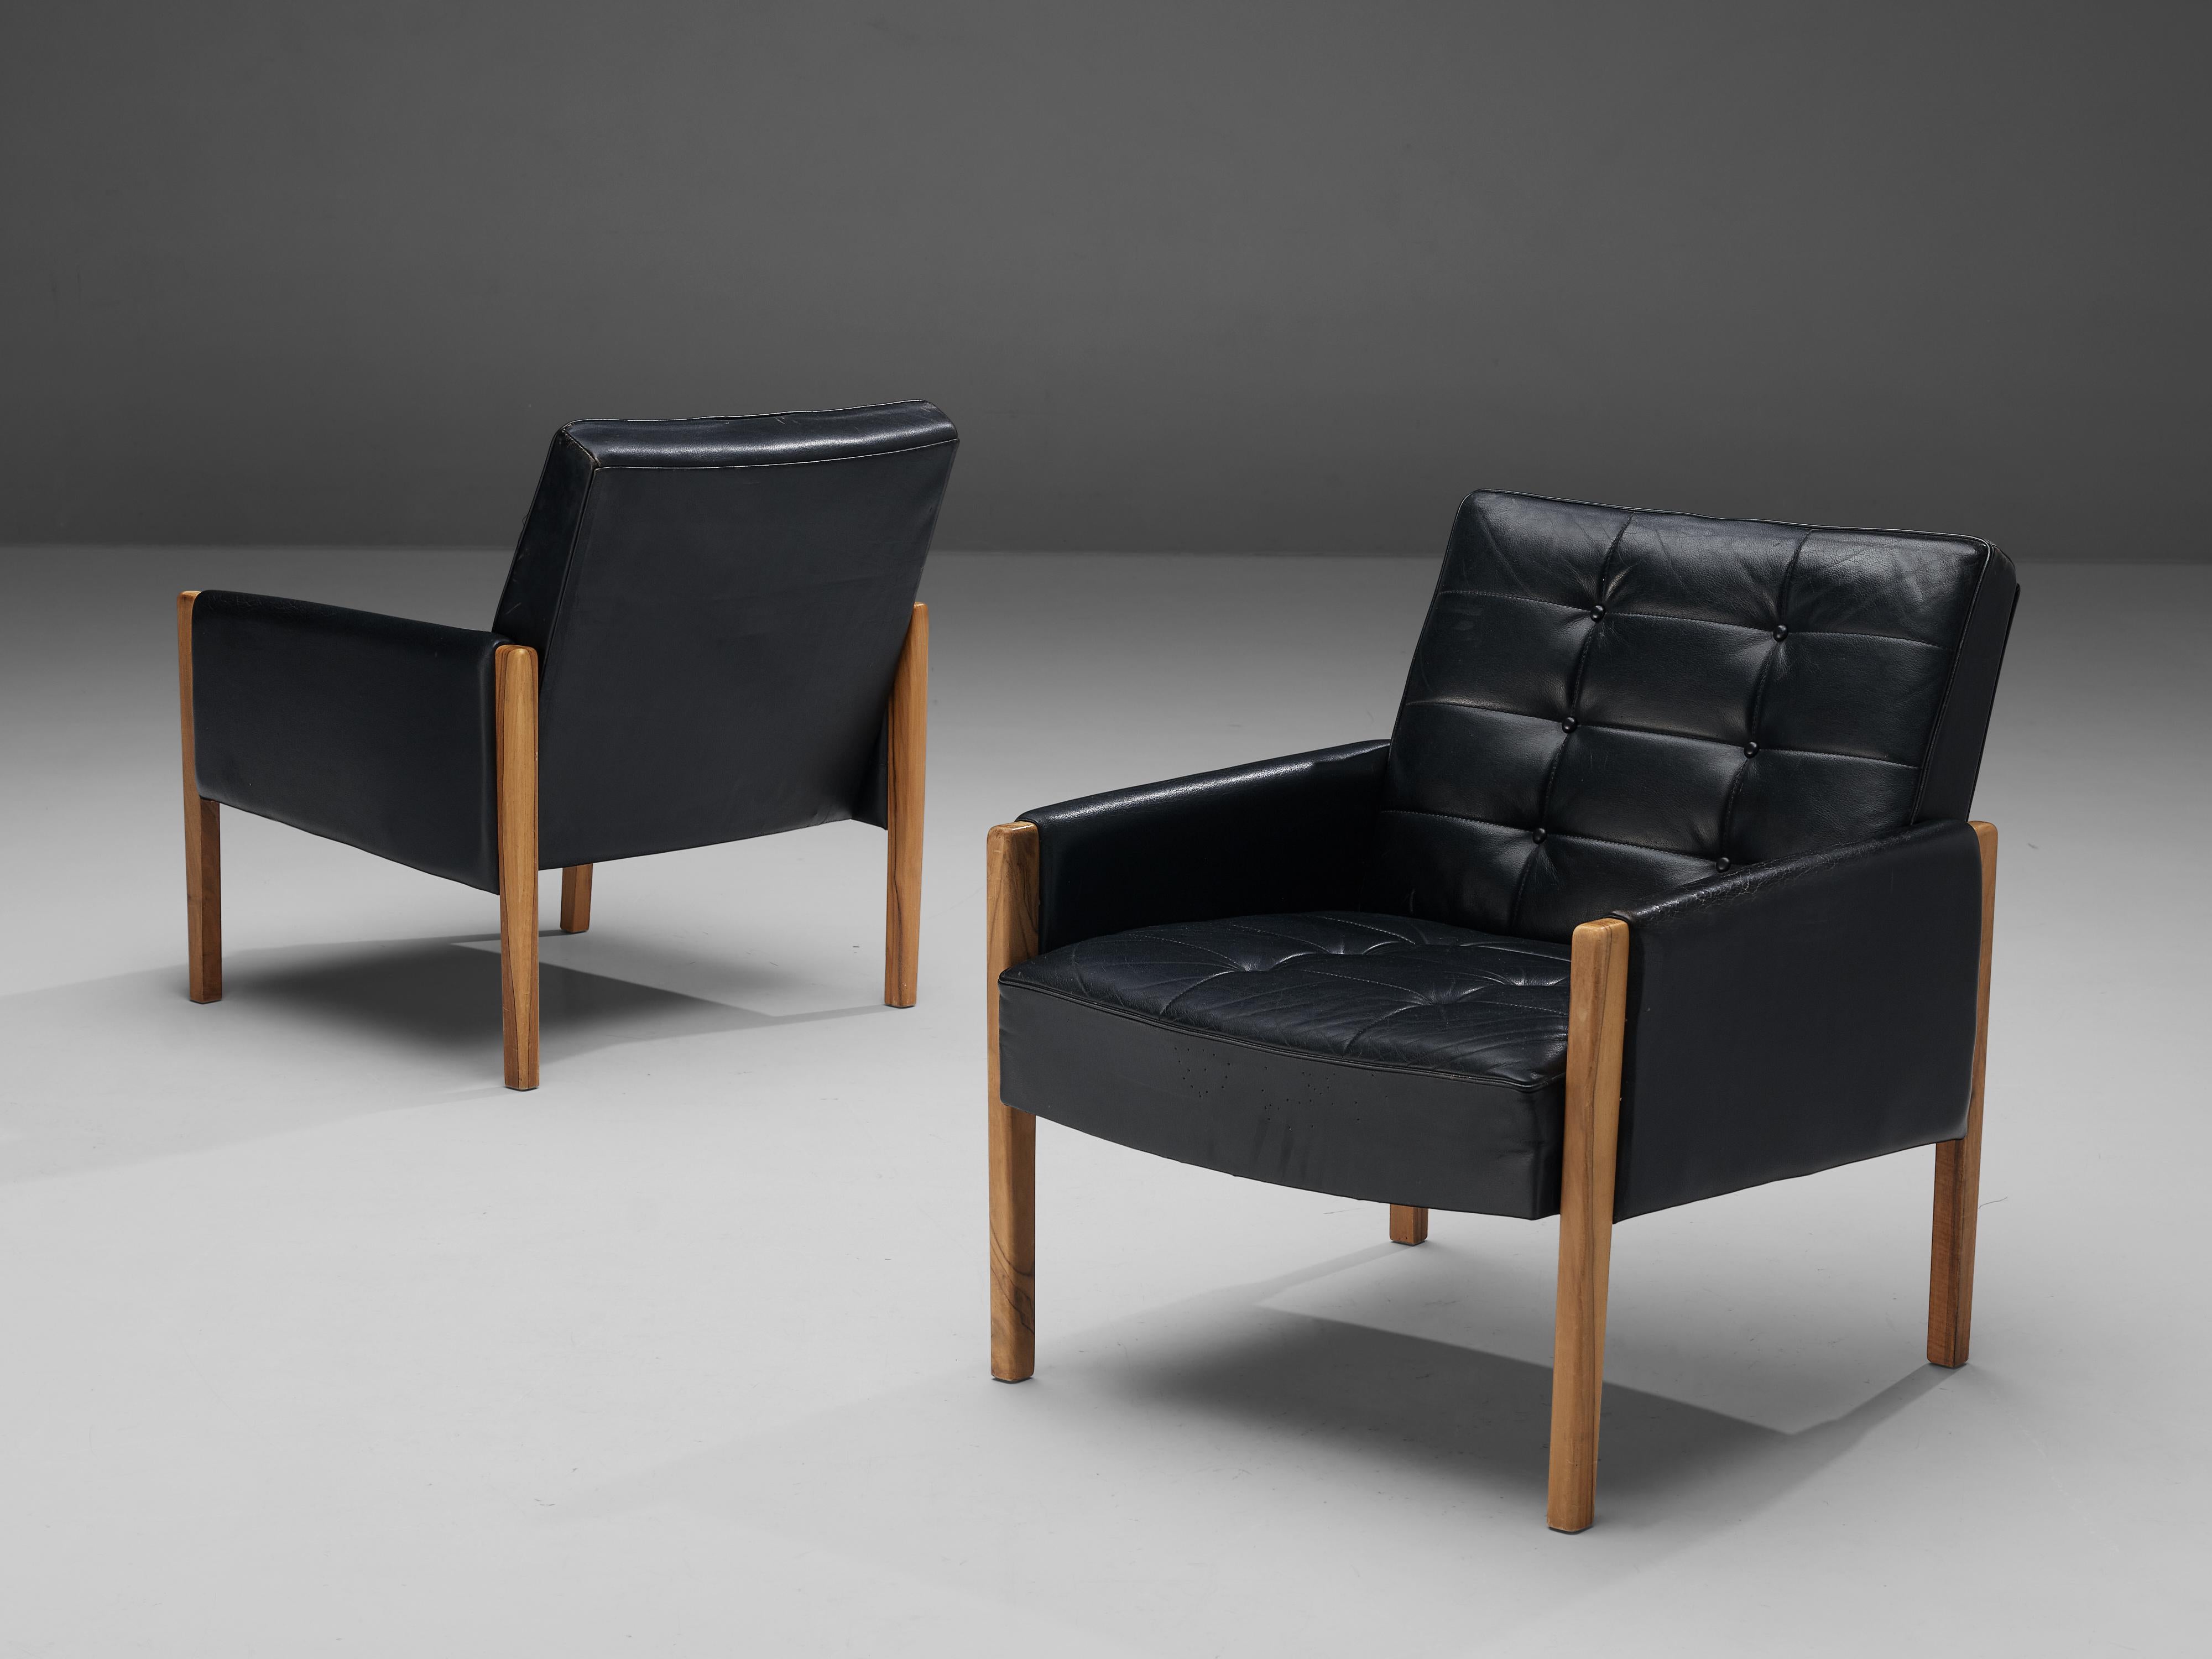 Paar Loungesessel, Leder, Nussbaum, Italien, 1960er Jahre

Grand Lounge Chair aus schwarzem Leder und gebeiztem Nussbaum. Dieser Stuhl besteht aus einem massiven Holzgestell mit einer getufteten Ledersitzfläche, die auf dem Holzrahmen angebracht